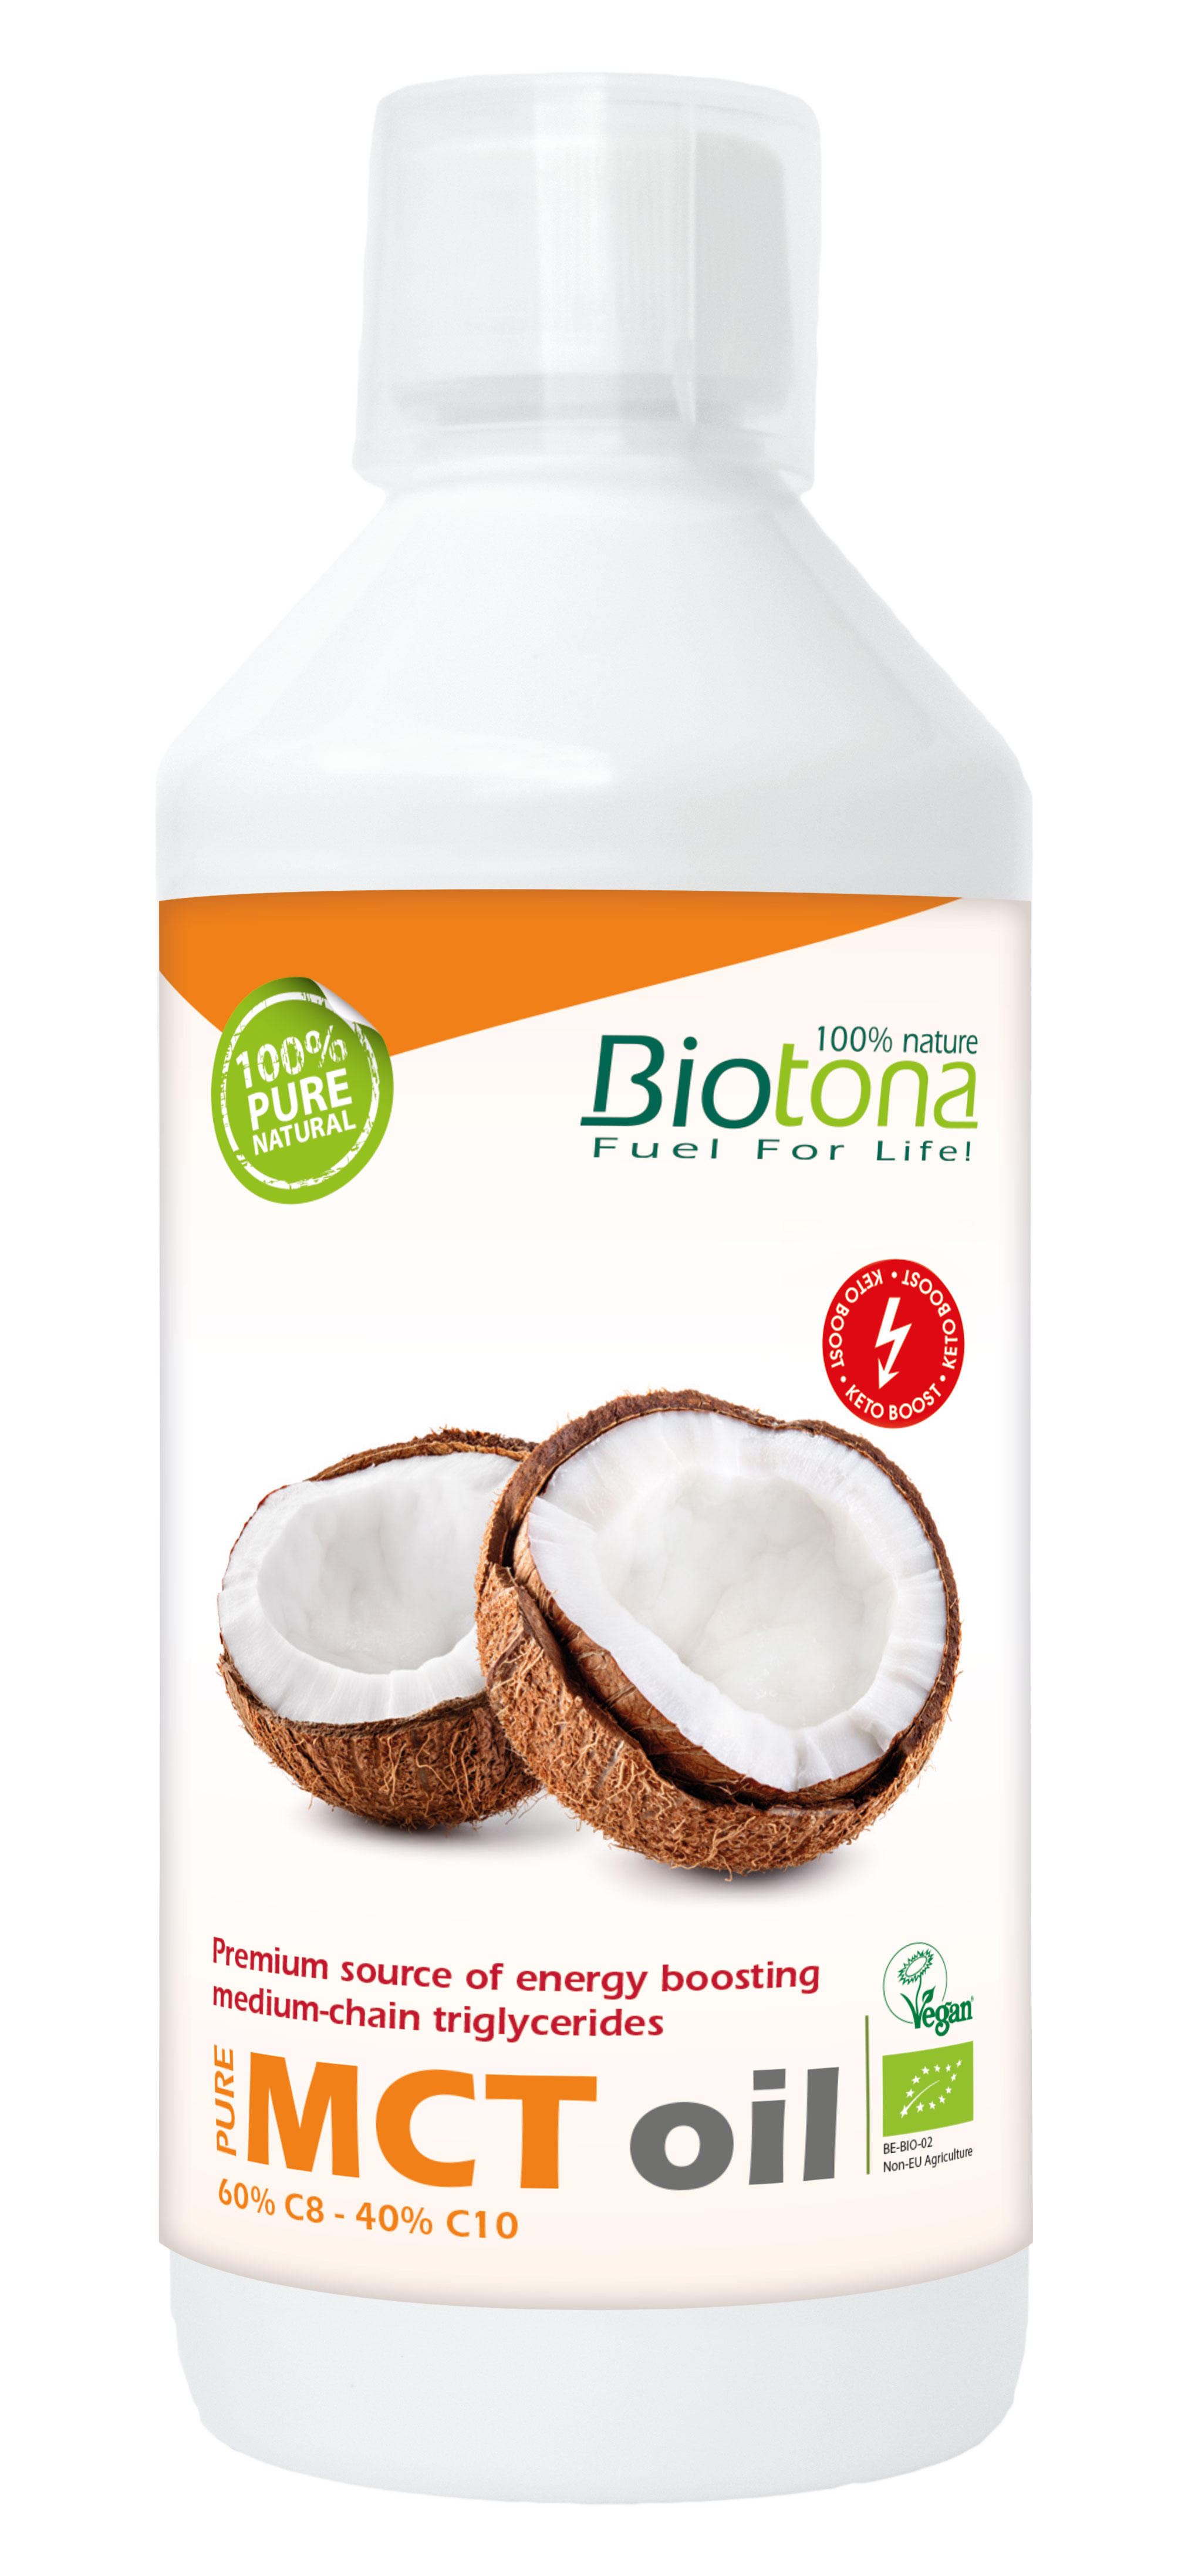 Brain fuel curcuma latte - Biotona